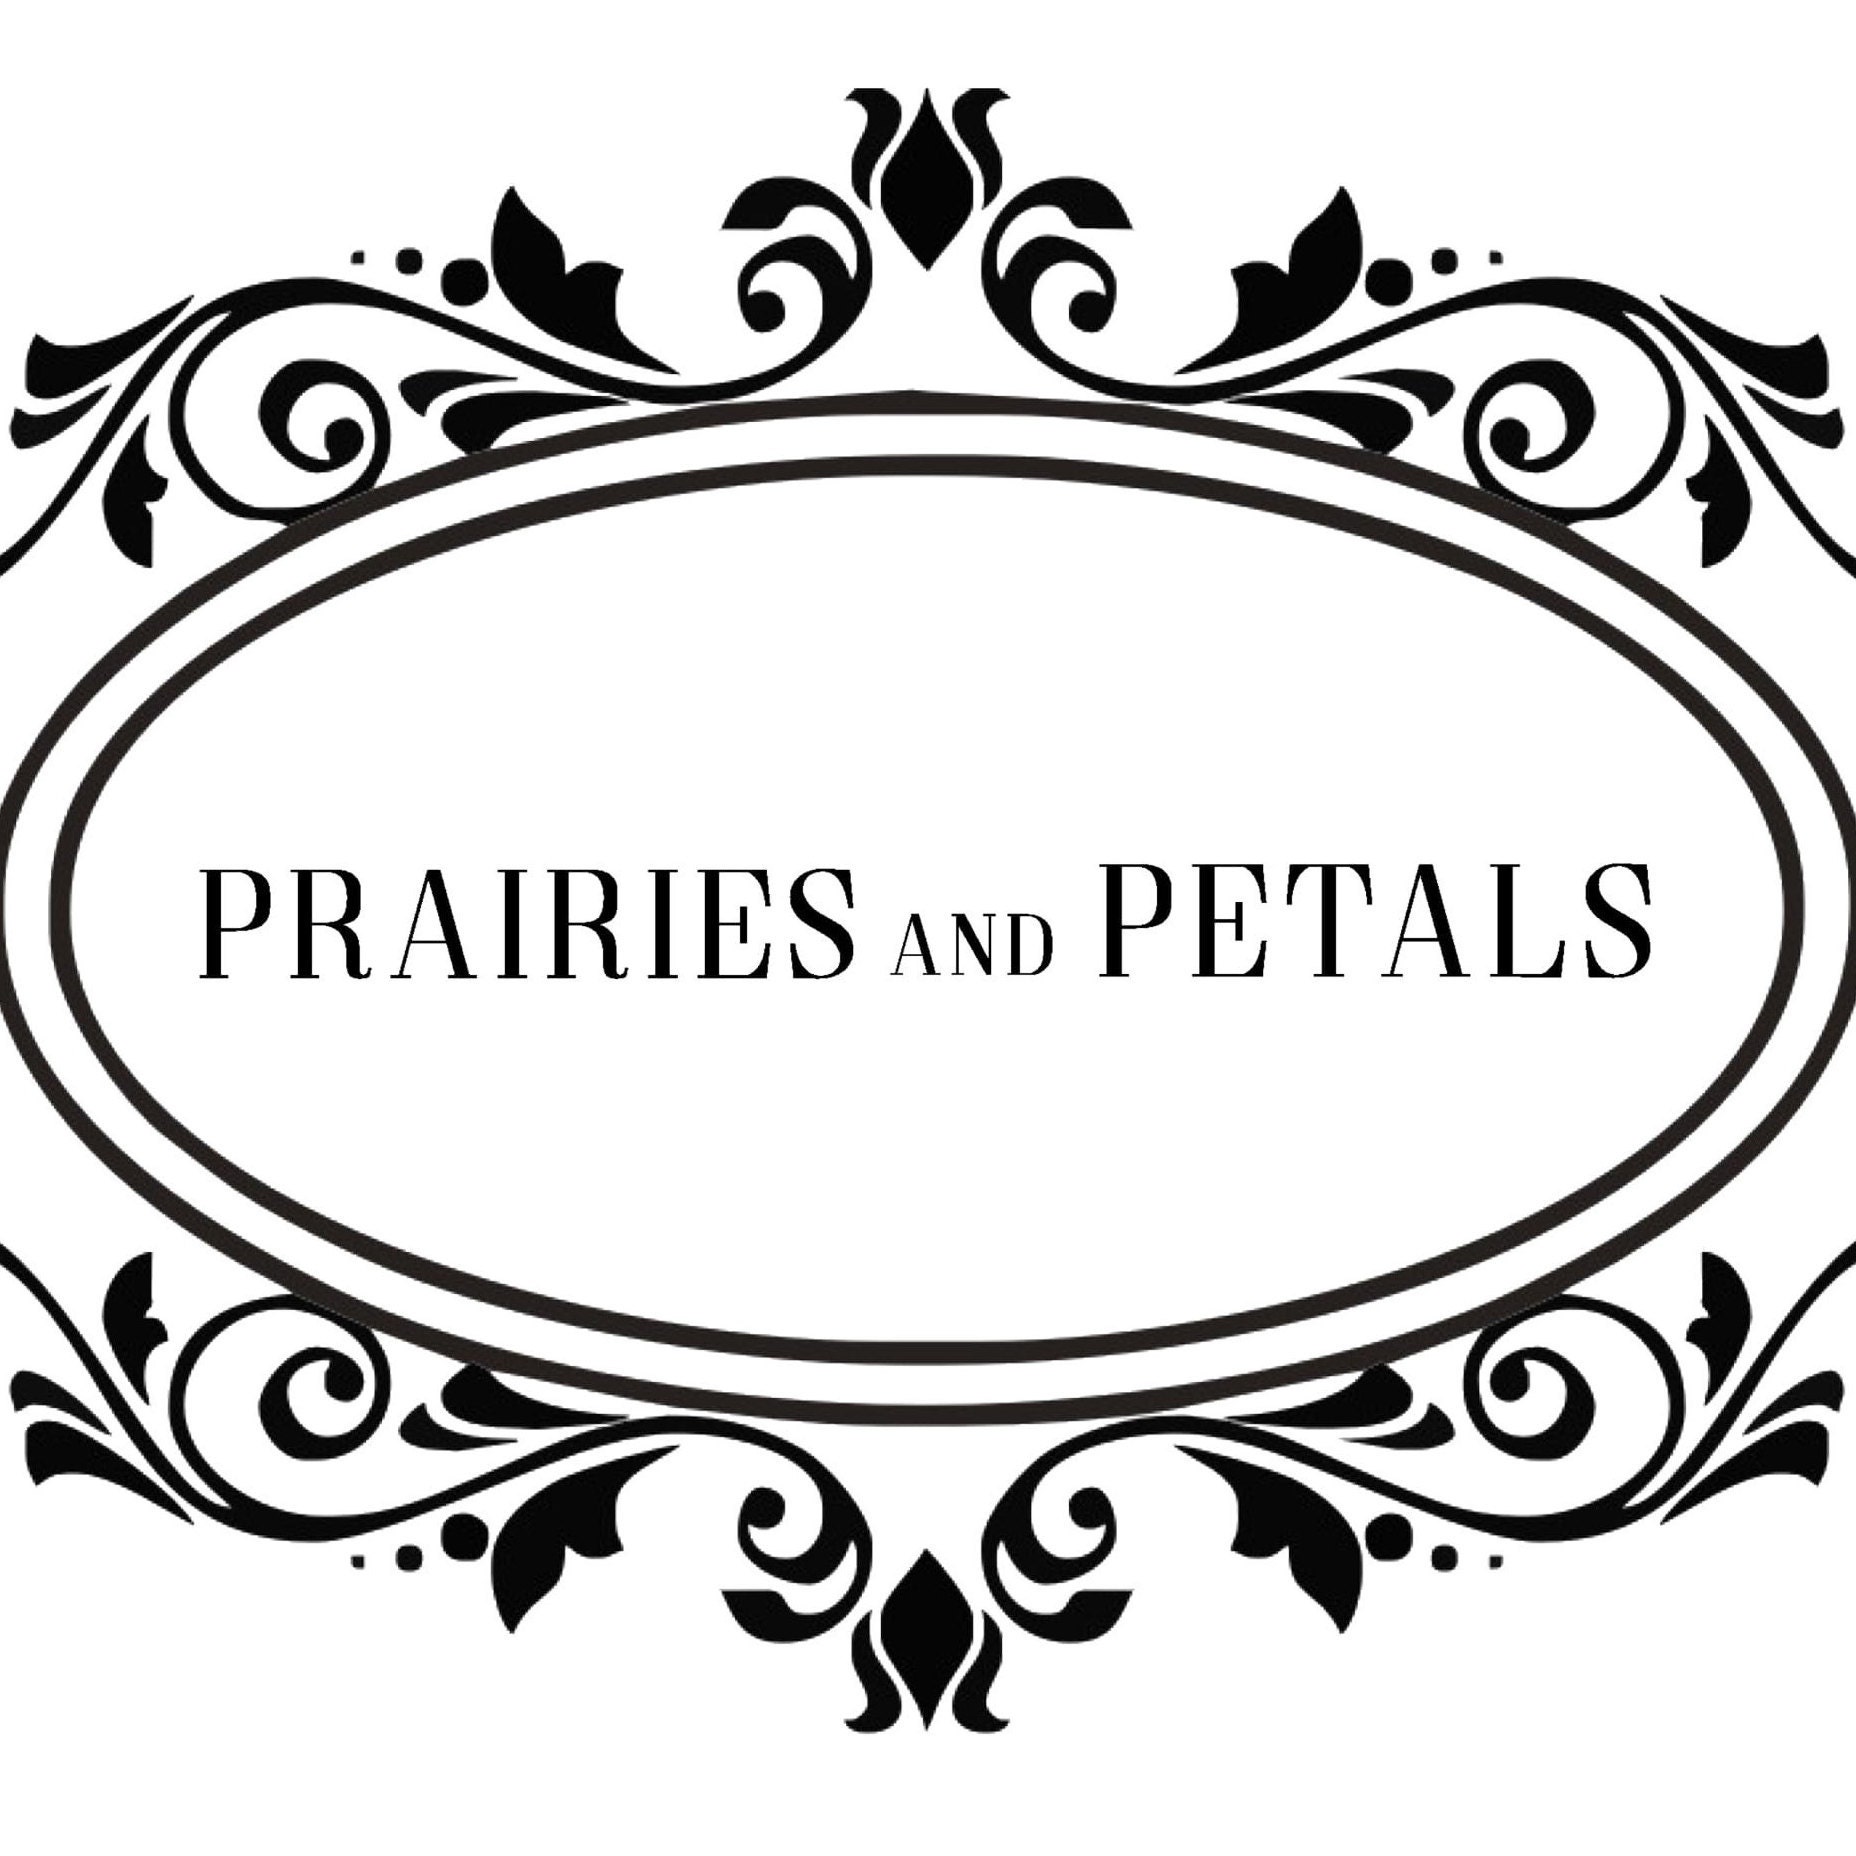 Prairies and Petals logo